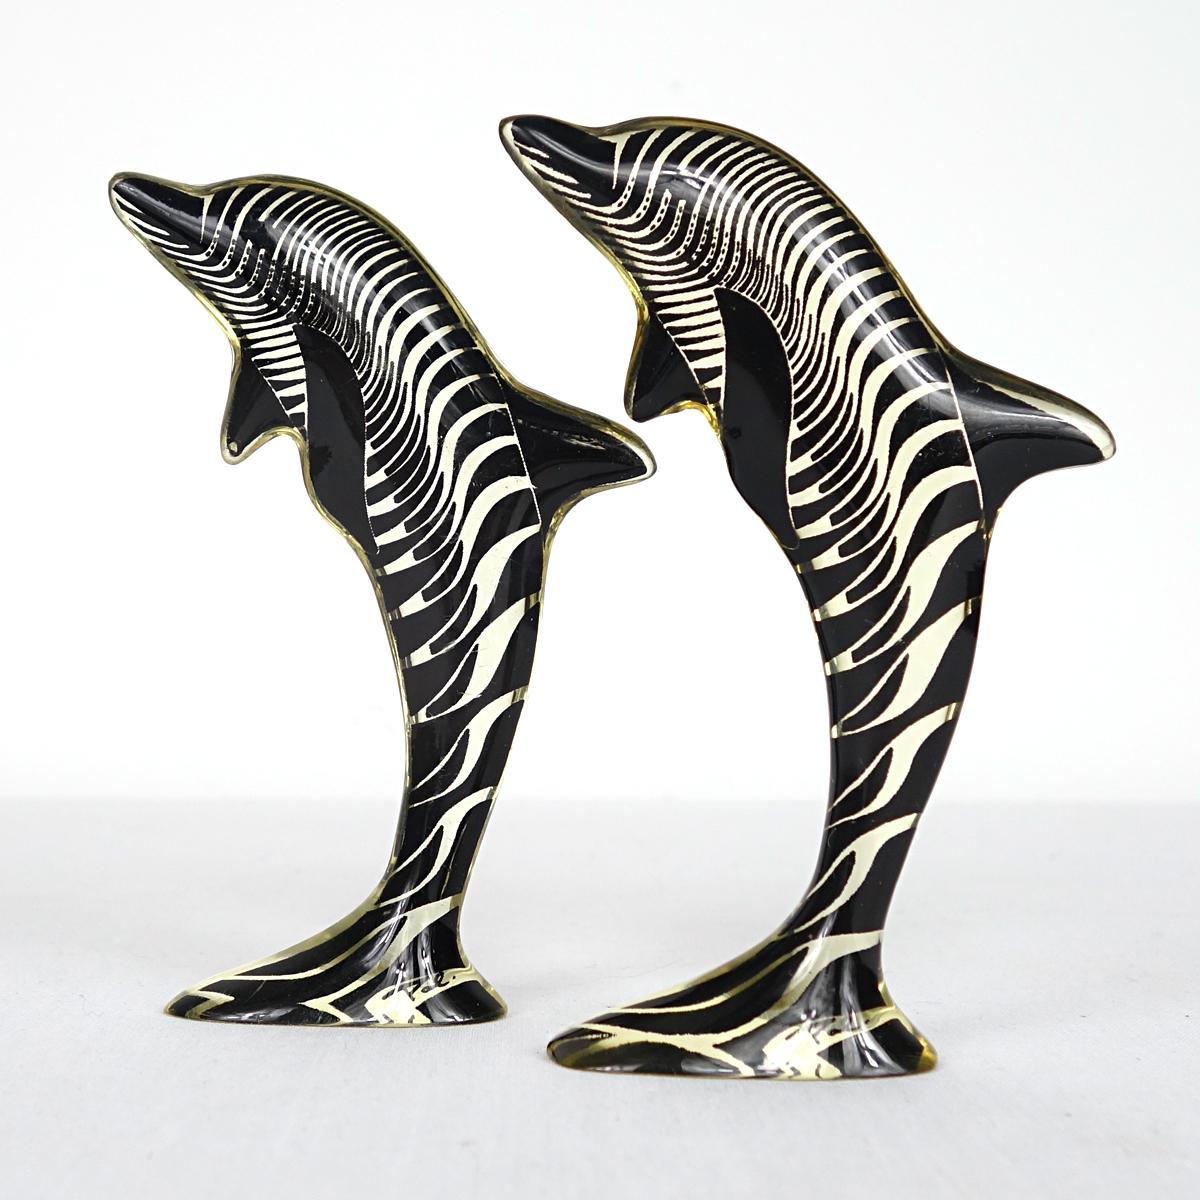 Ein Paar Delphine, entworfen und hergestellt von Abraham Palatnik. 

Der brasilianische Künstler Abraham Palatnik (1928) war der Begründer der technologischen Bewegung in der brasilianischen Kunst und ein Pionier in der Herstellung kinetischer